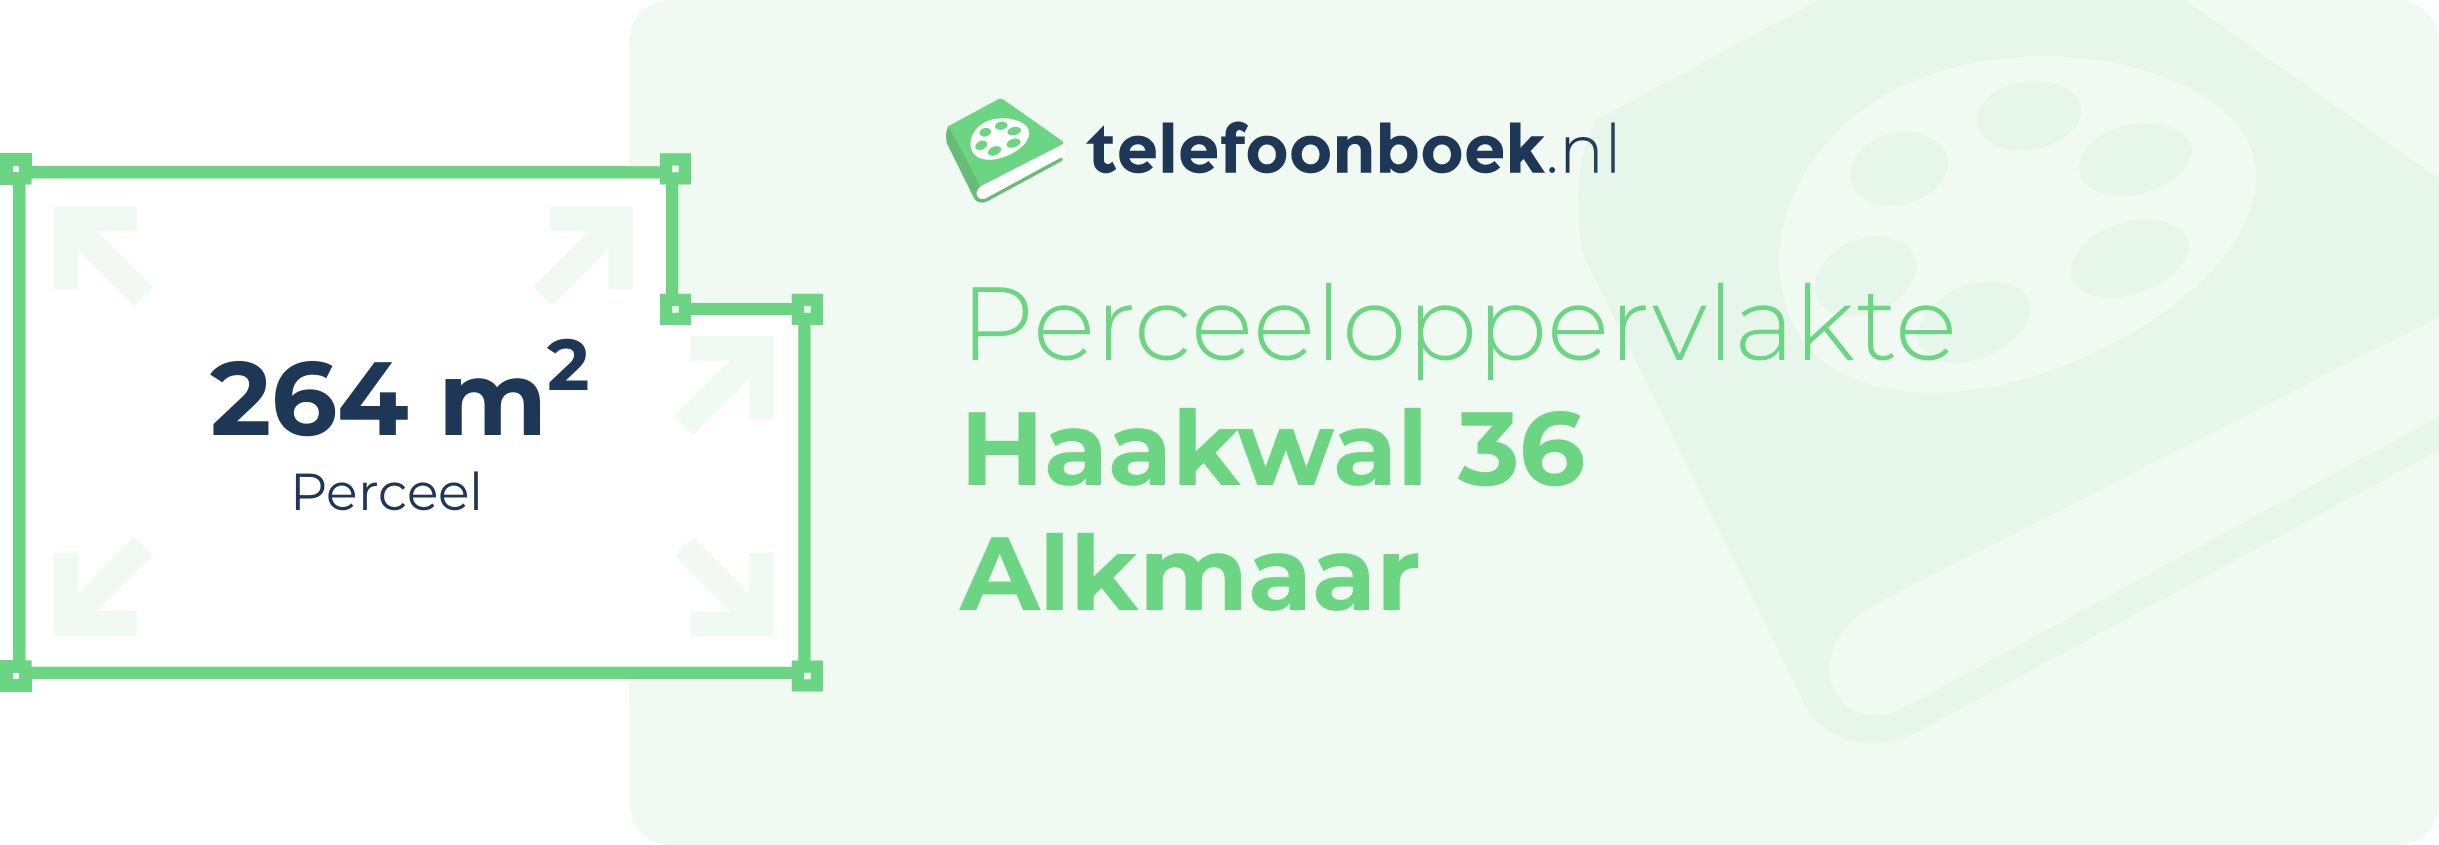 Perceeloppervlakte Haakwal 36 Alkmaar